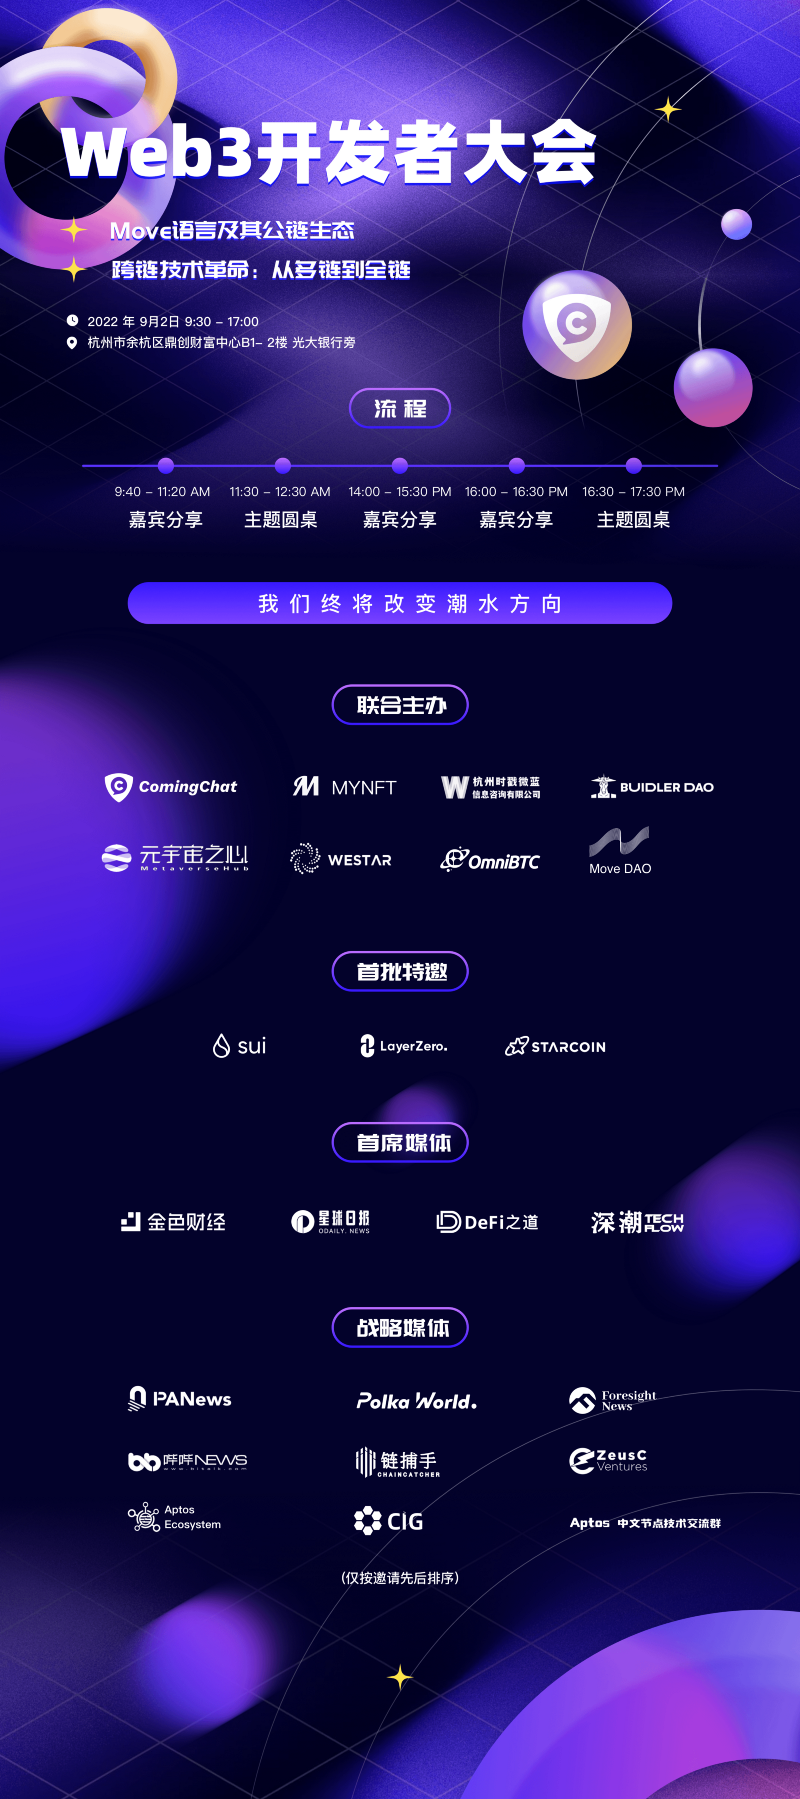 順勢而為，扶搖直上，杭州Web3開發者大會來了！